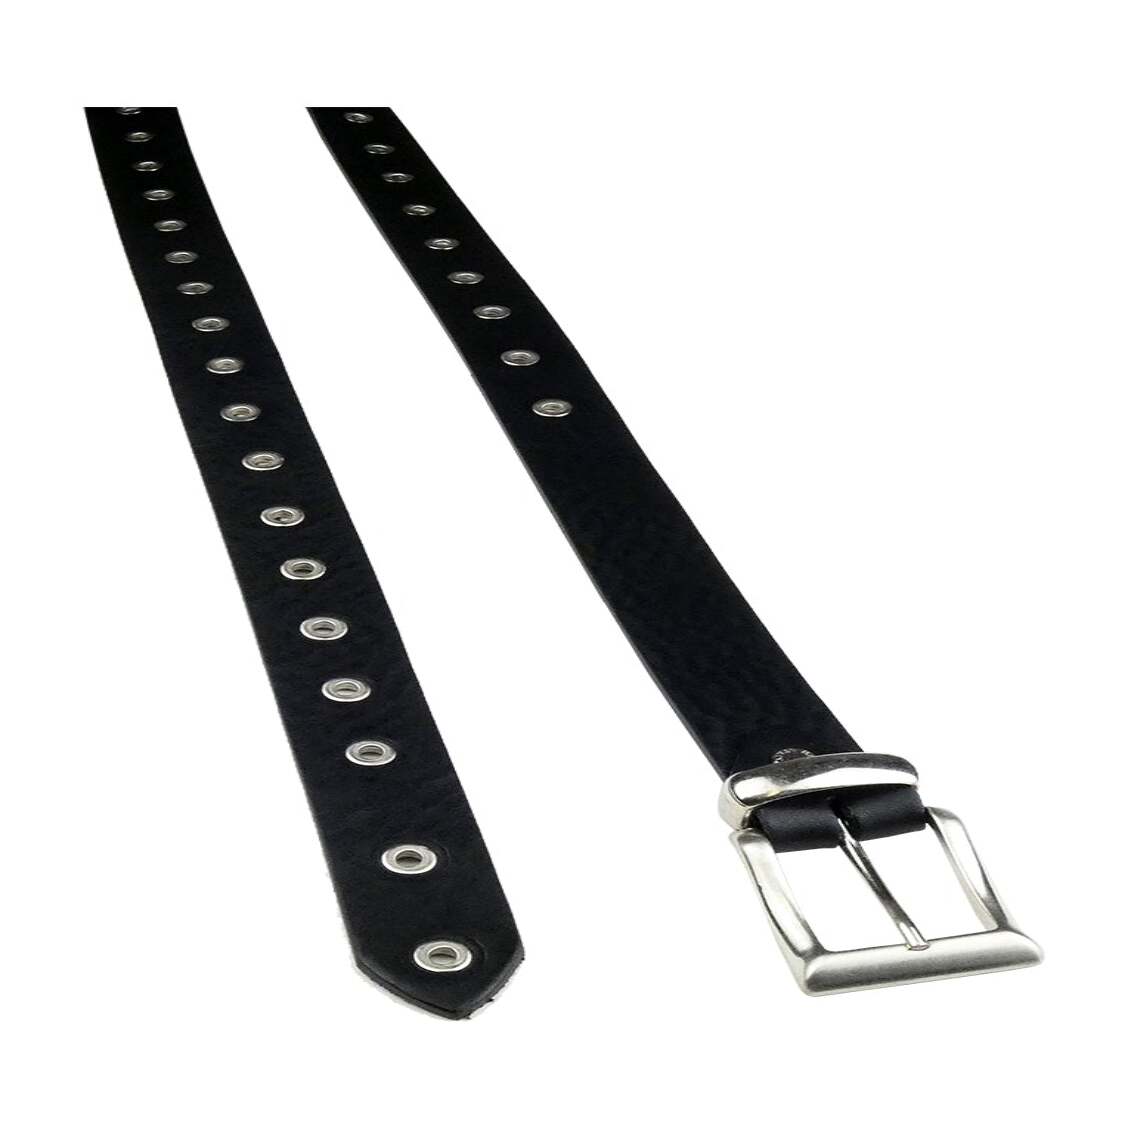 Cloe 3 cm Schwarz Ledergürtel mit Schnallenösen und Zamak-Schlaufe hergestellt in Italien